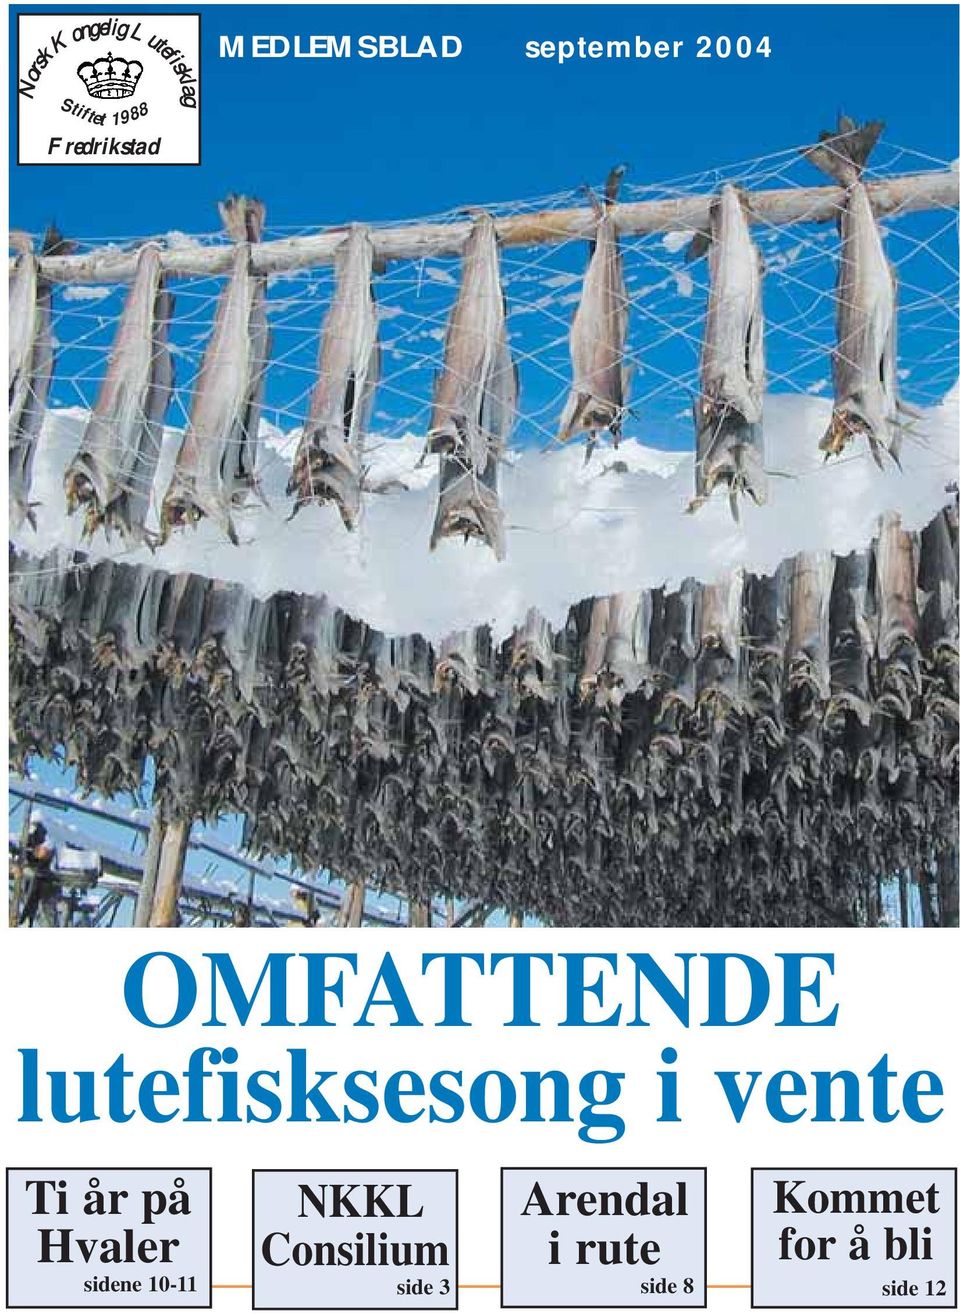 lutefisksesong i vente Ti år på Hvaler sidene 10-11